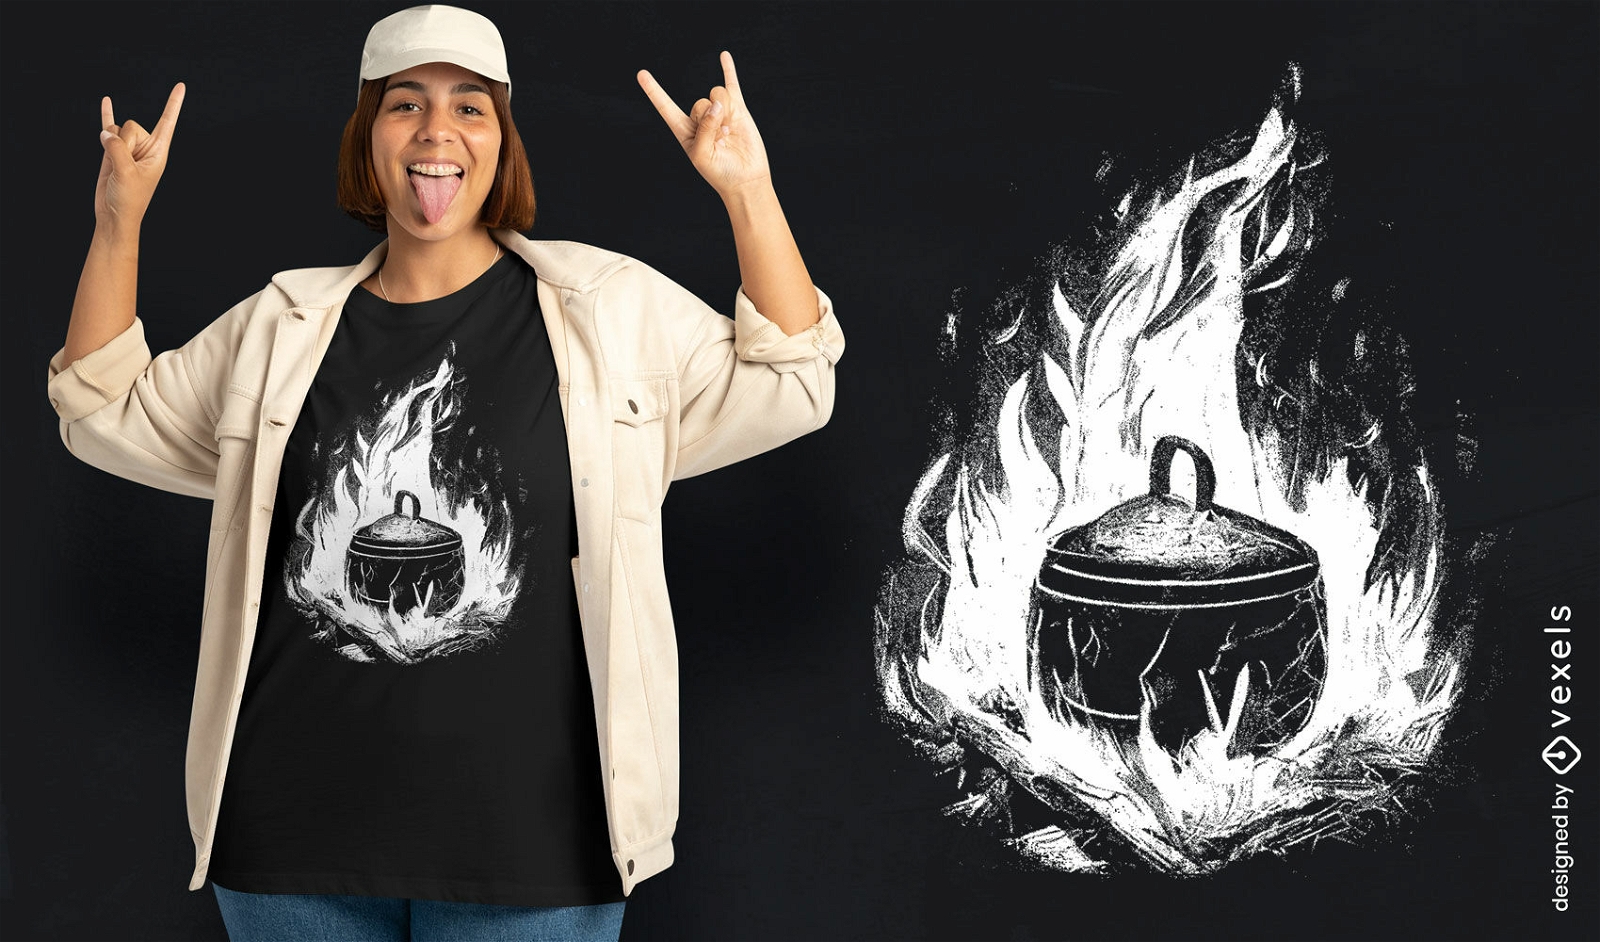 Campfire cookout t-shirt design